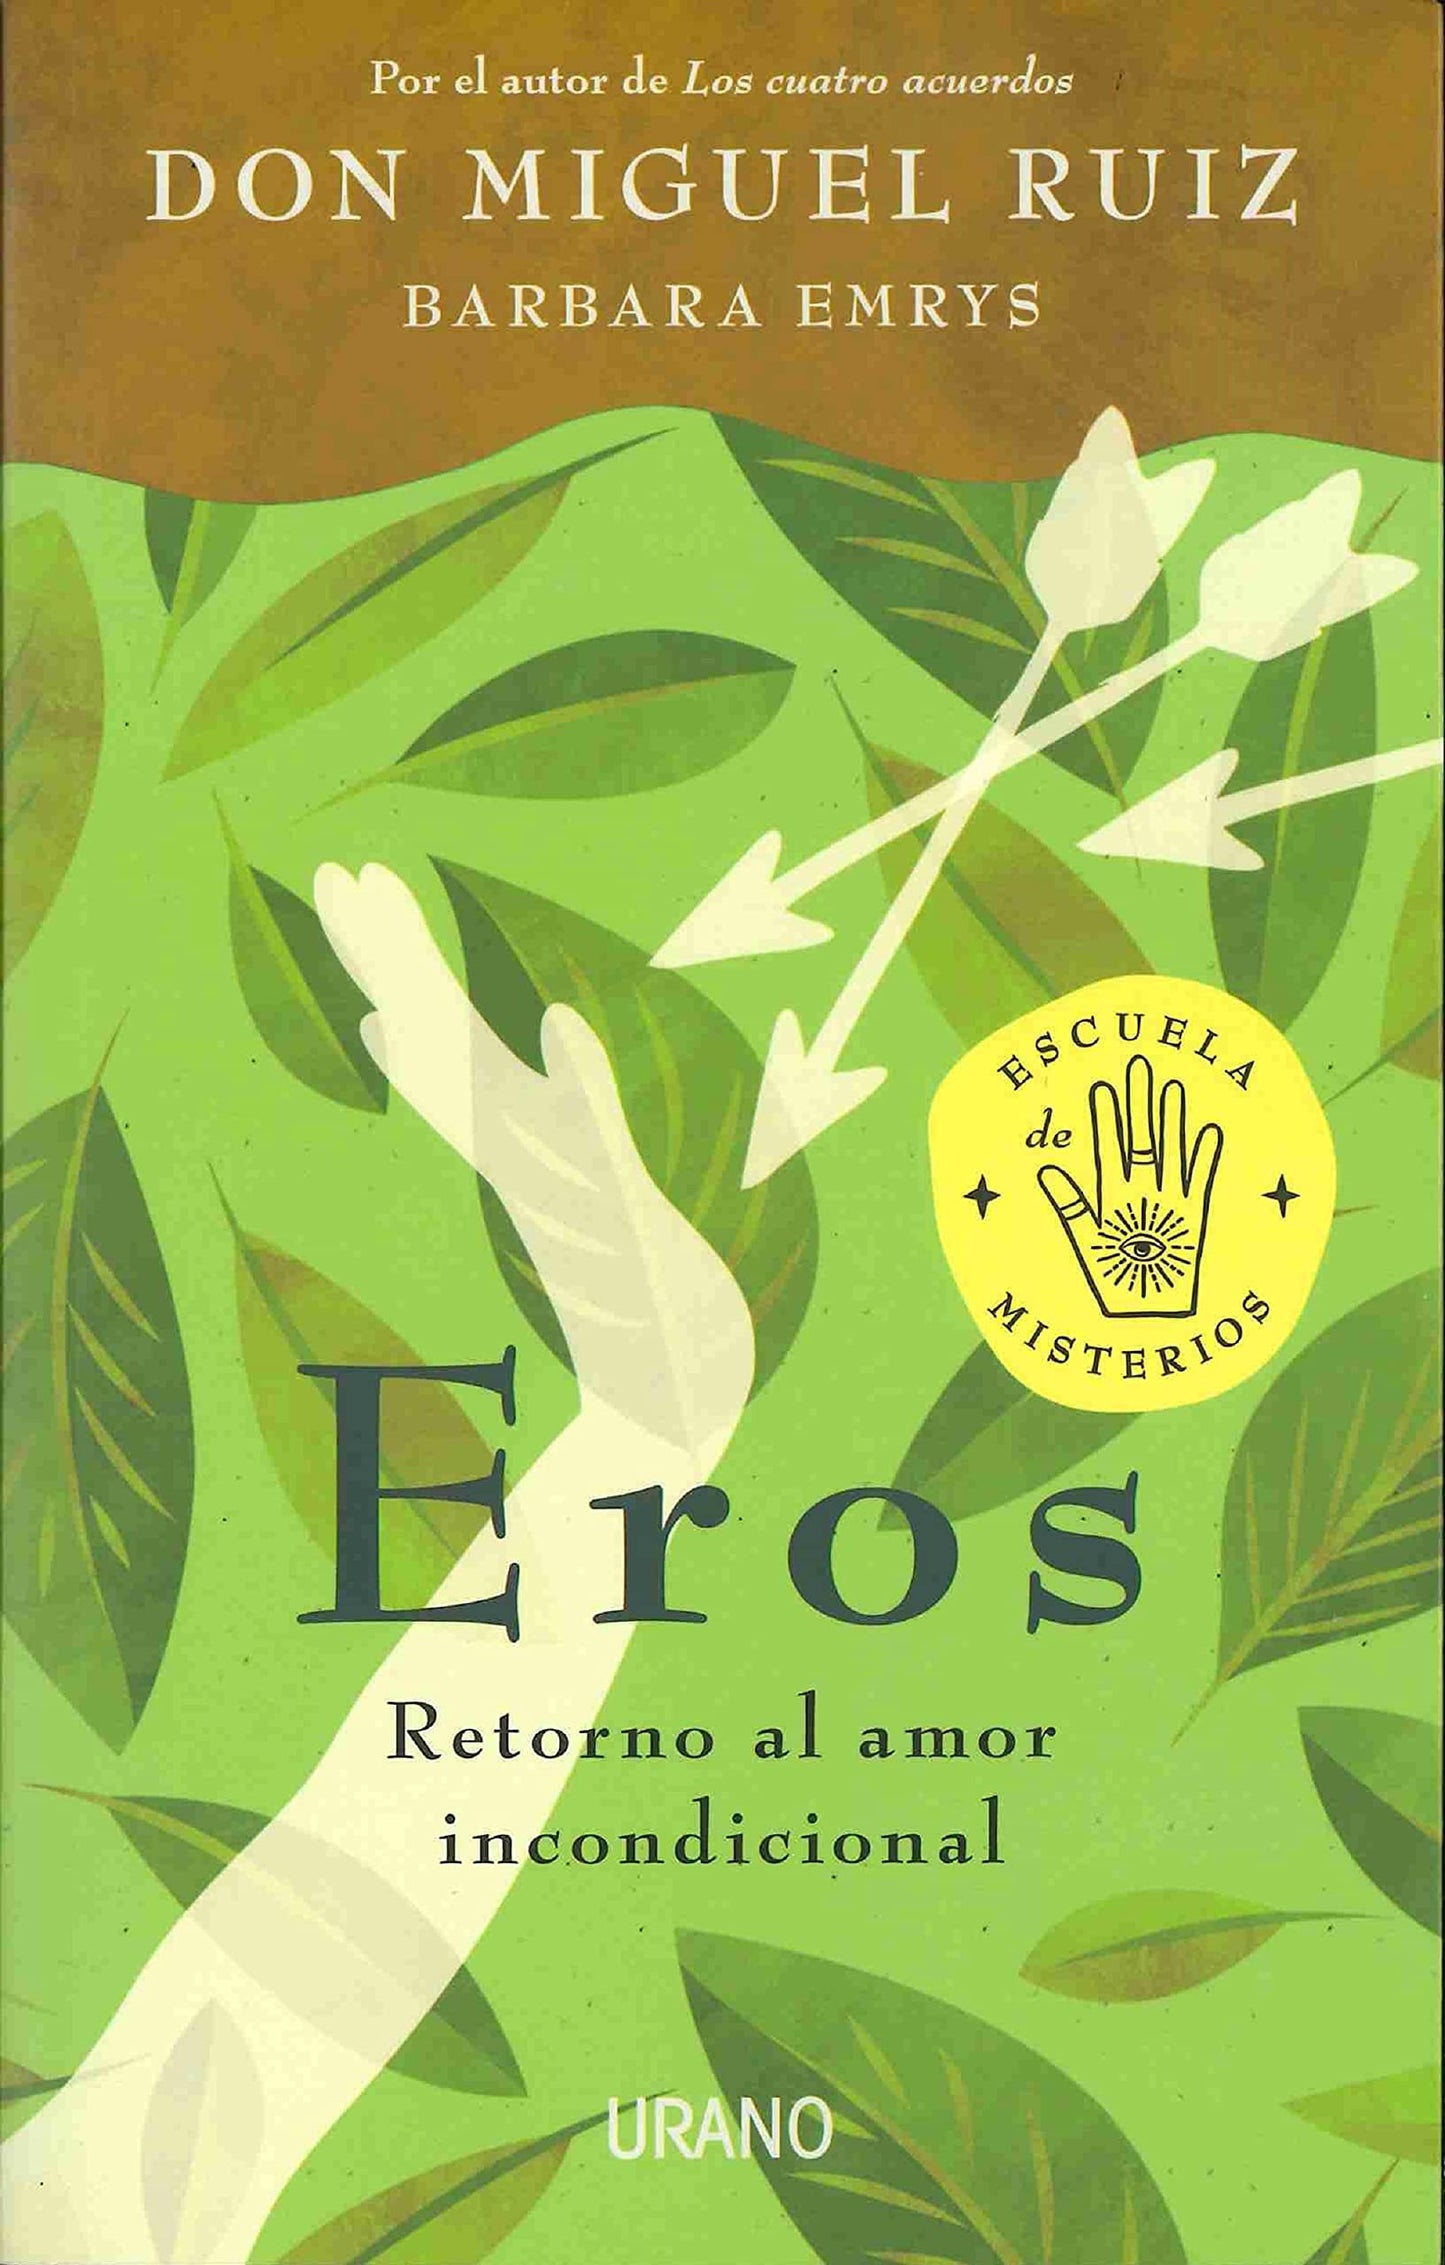 Eros: Retorno al amor incondicional - Miguel Ruiz  / Barbara Emrys